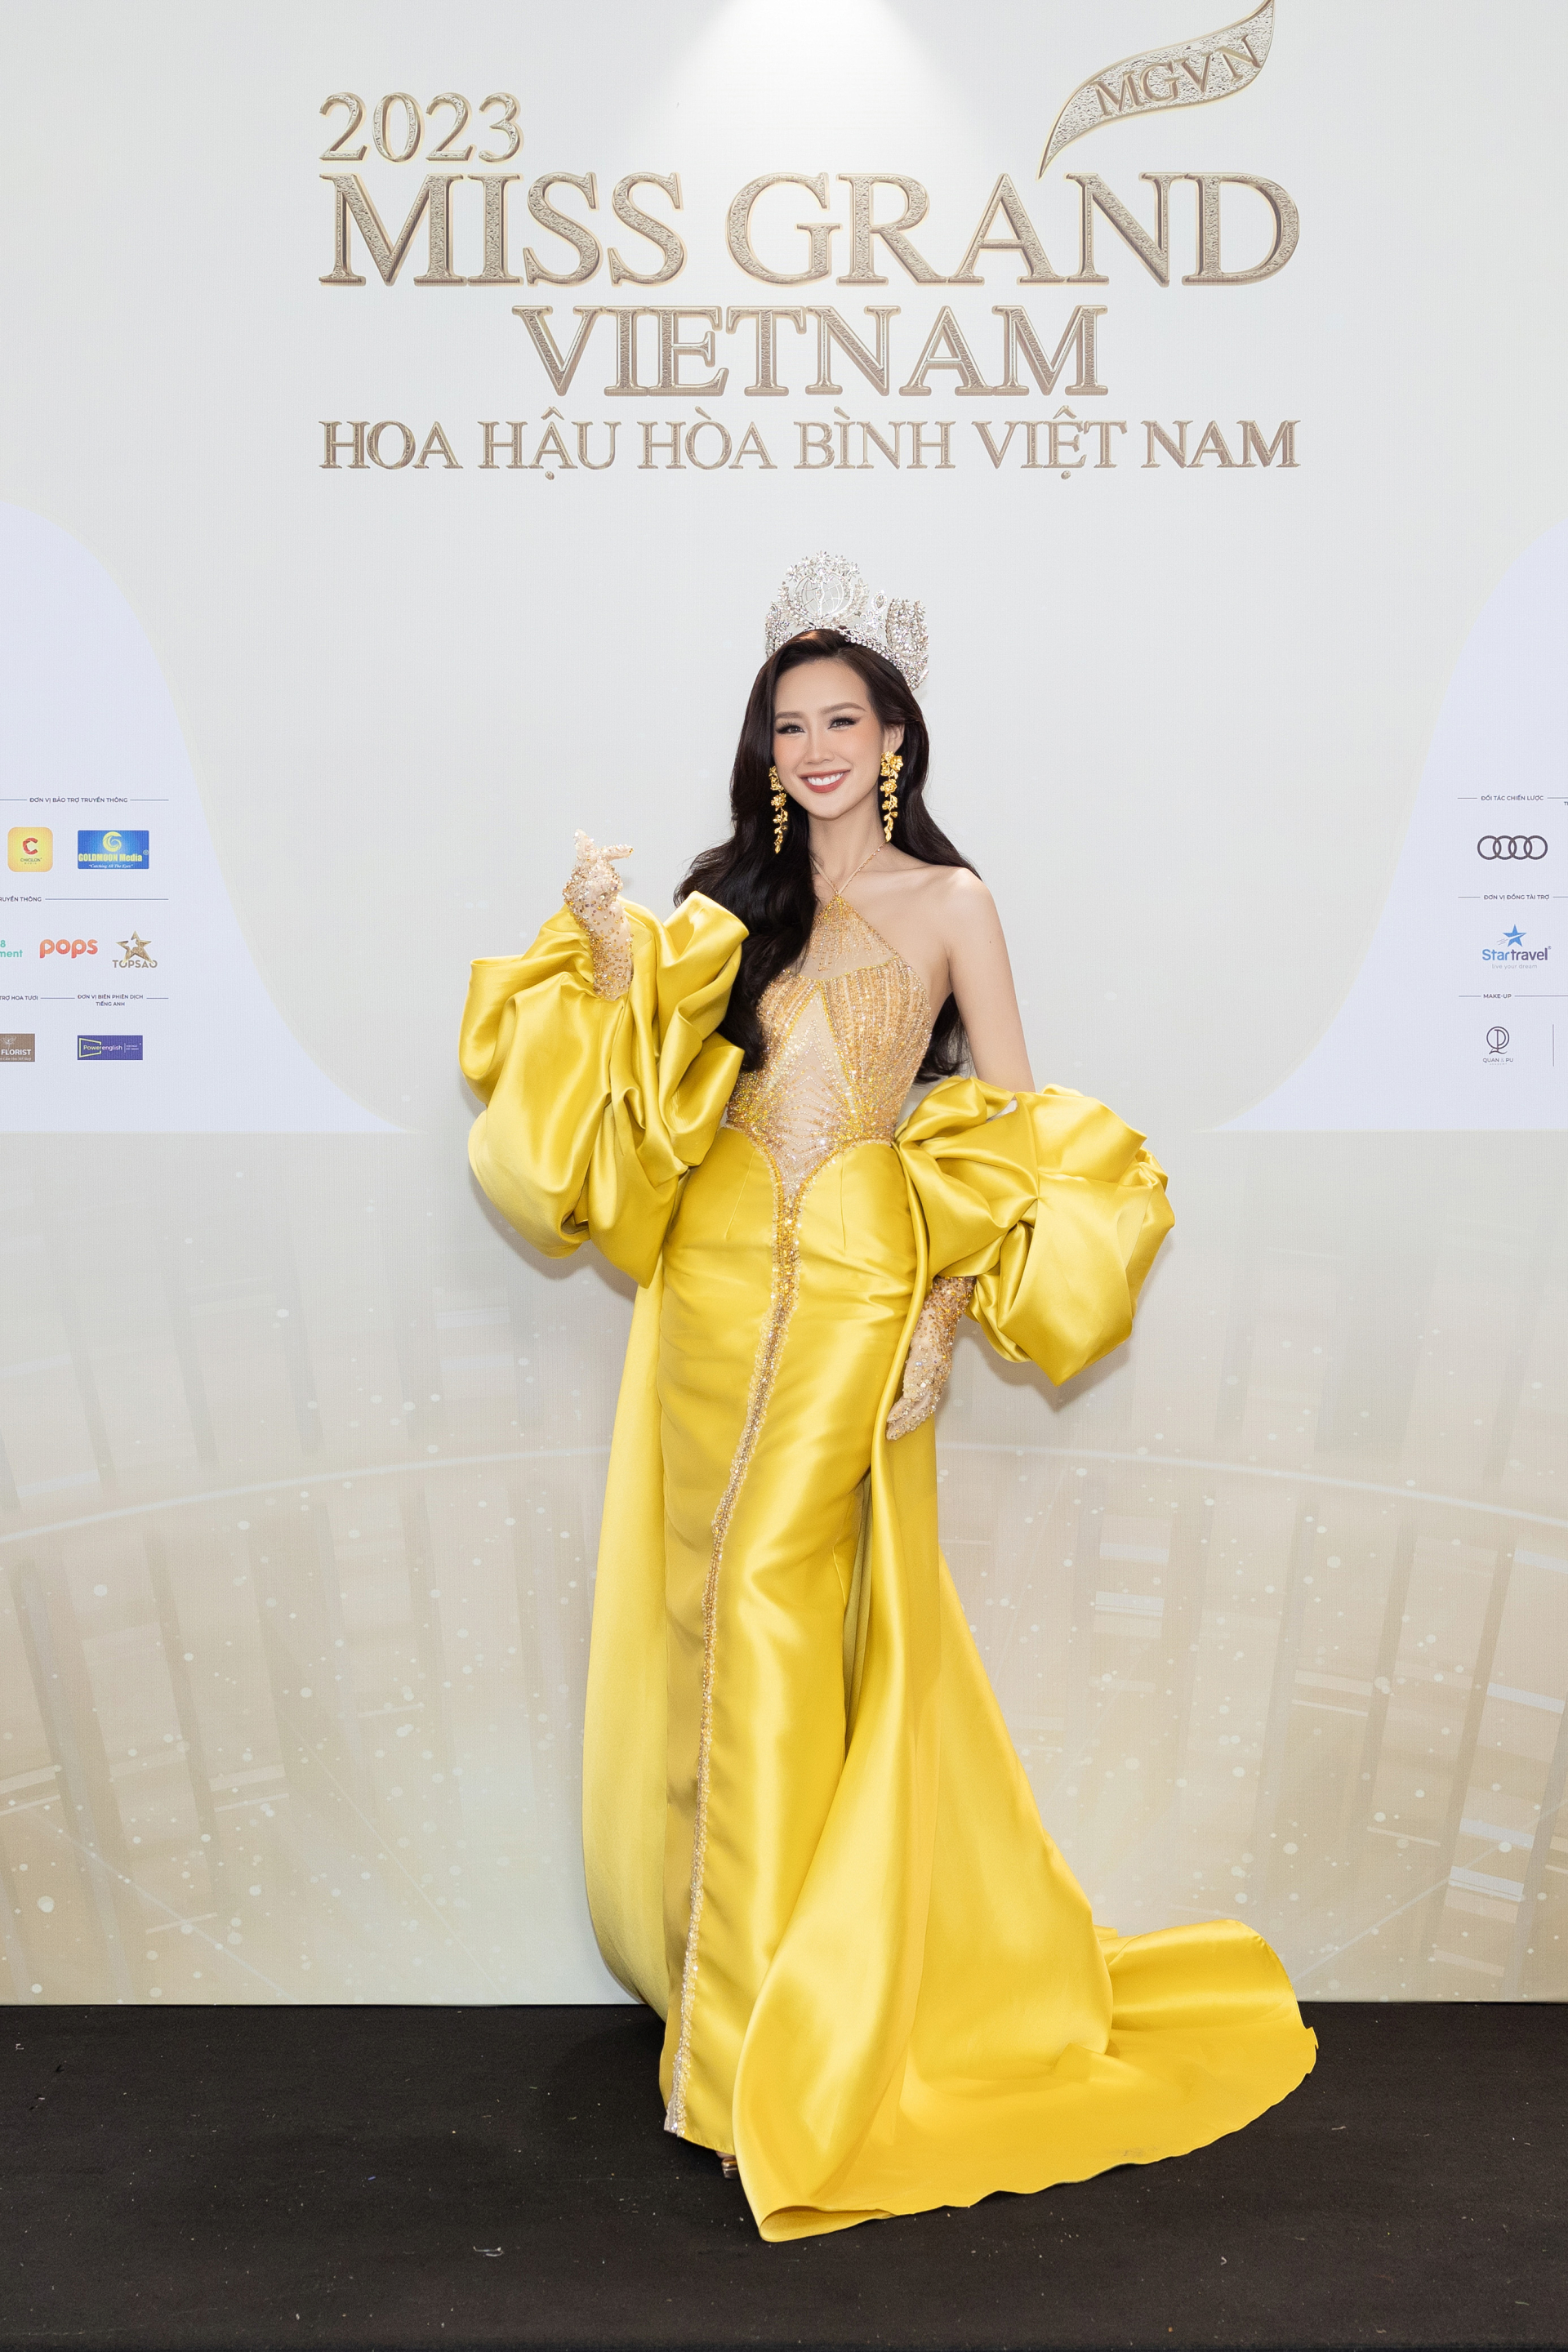 Thảm đỏ chung kết Miss Grand Vietnam 2023: Vợ chồng Trường Giang Nhã Phương đi cùng bạn trai tin đồn của Đoàn Thiên Ân - ảnh 10